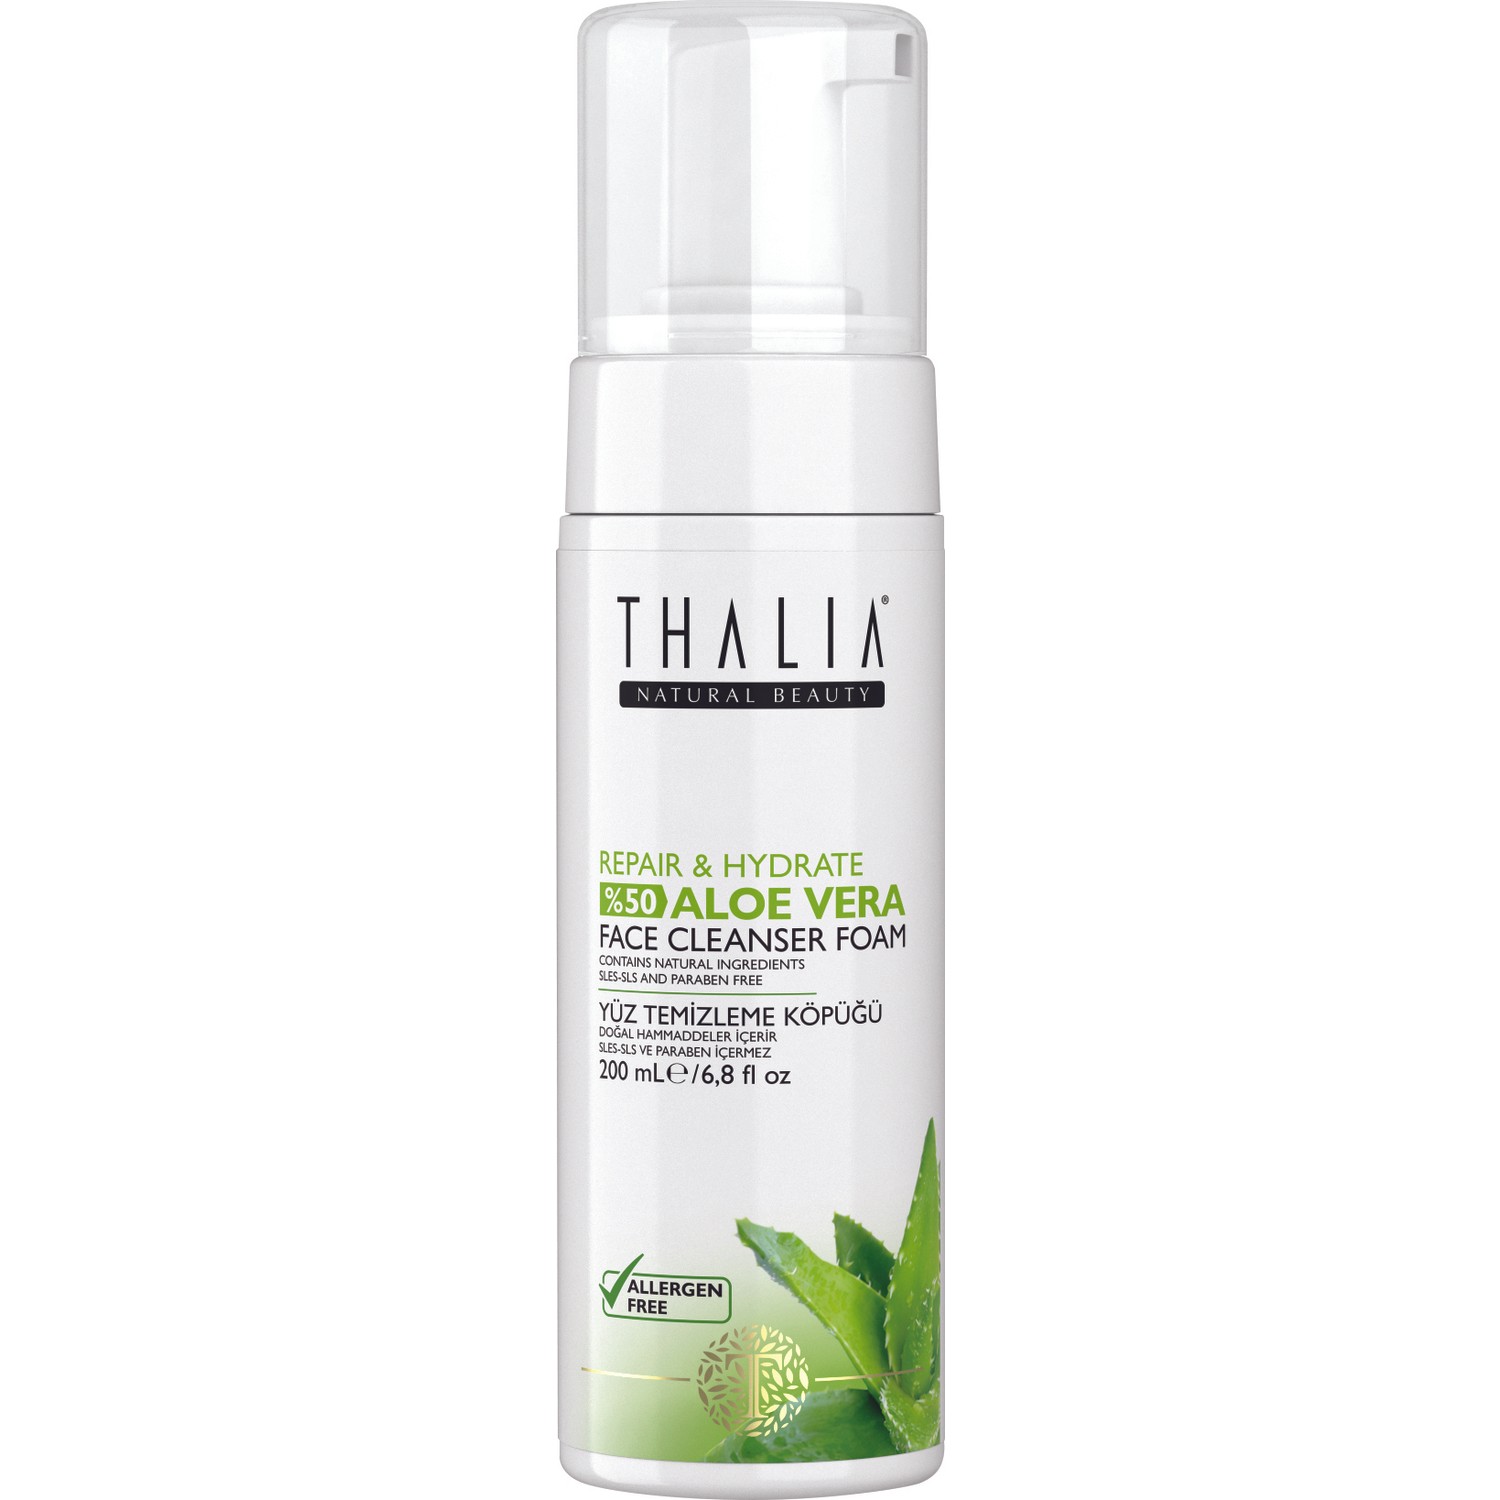 Очищающая пенка для лица Thalia с 99% экстрактом алоэ вера, 200 мл крем для лица и тела thalia natural beauty pomegranate 250 мл